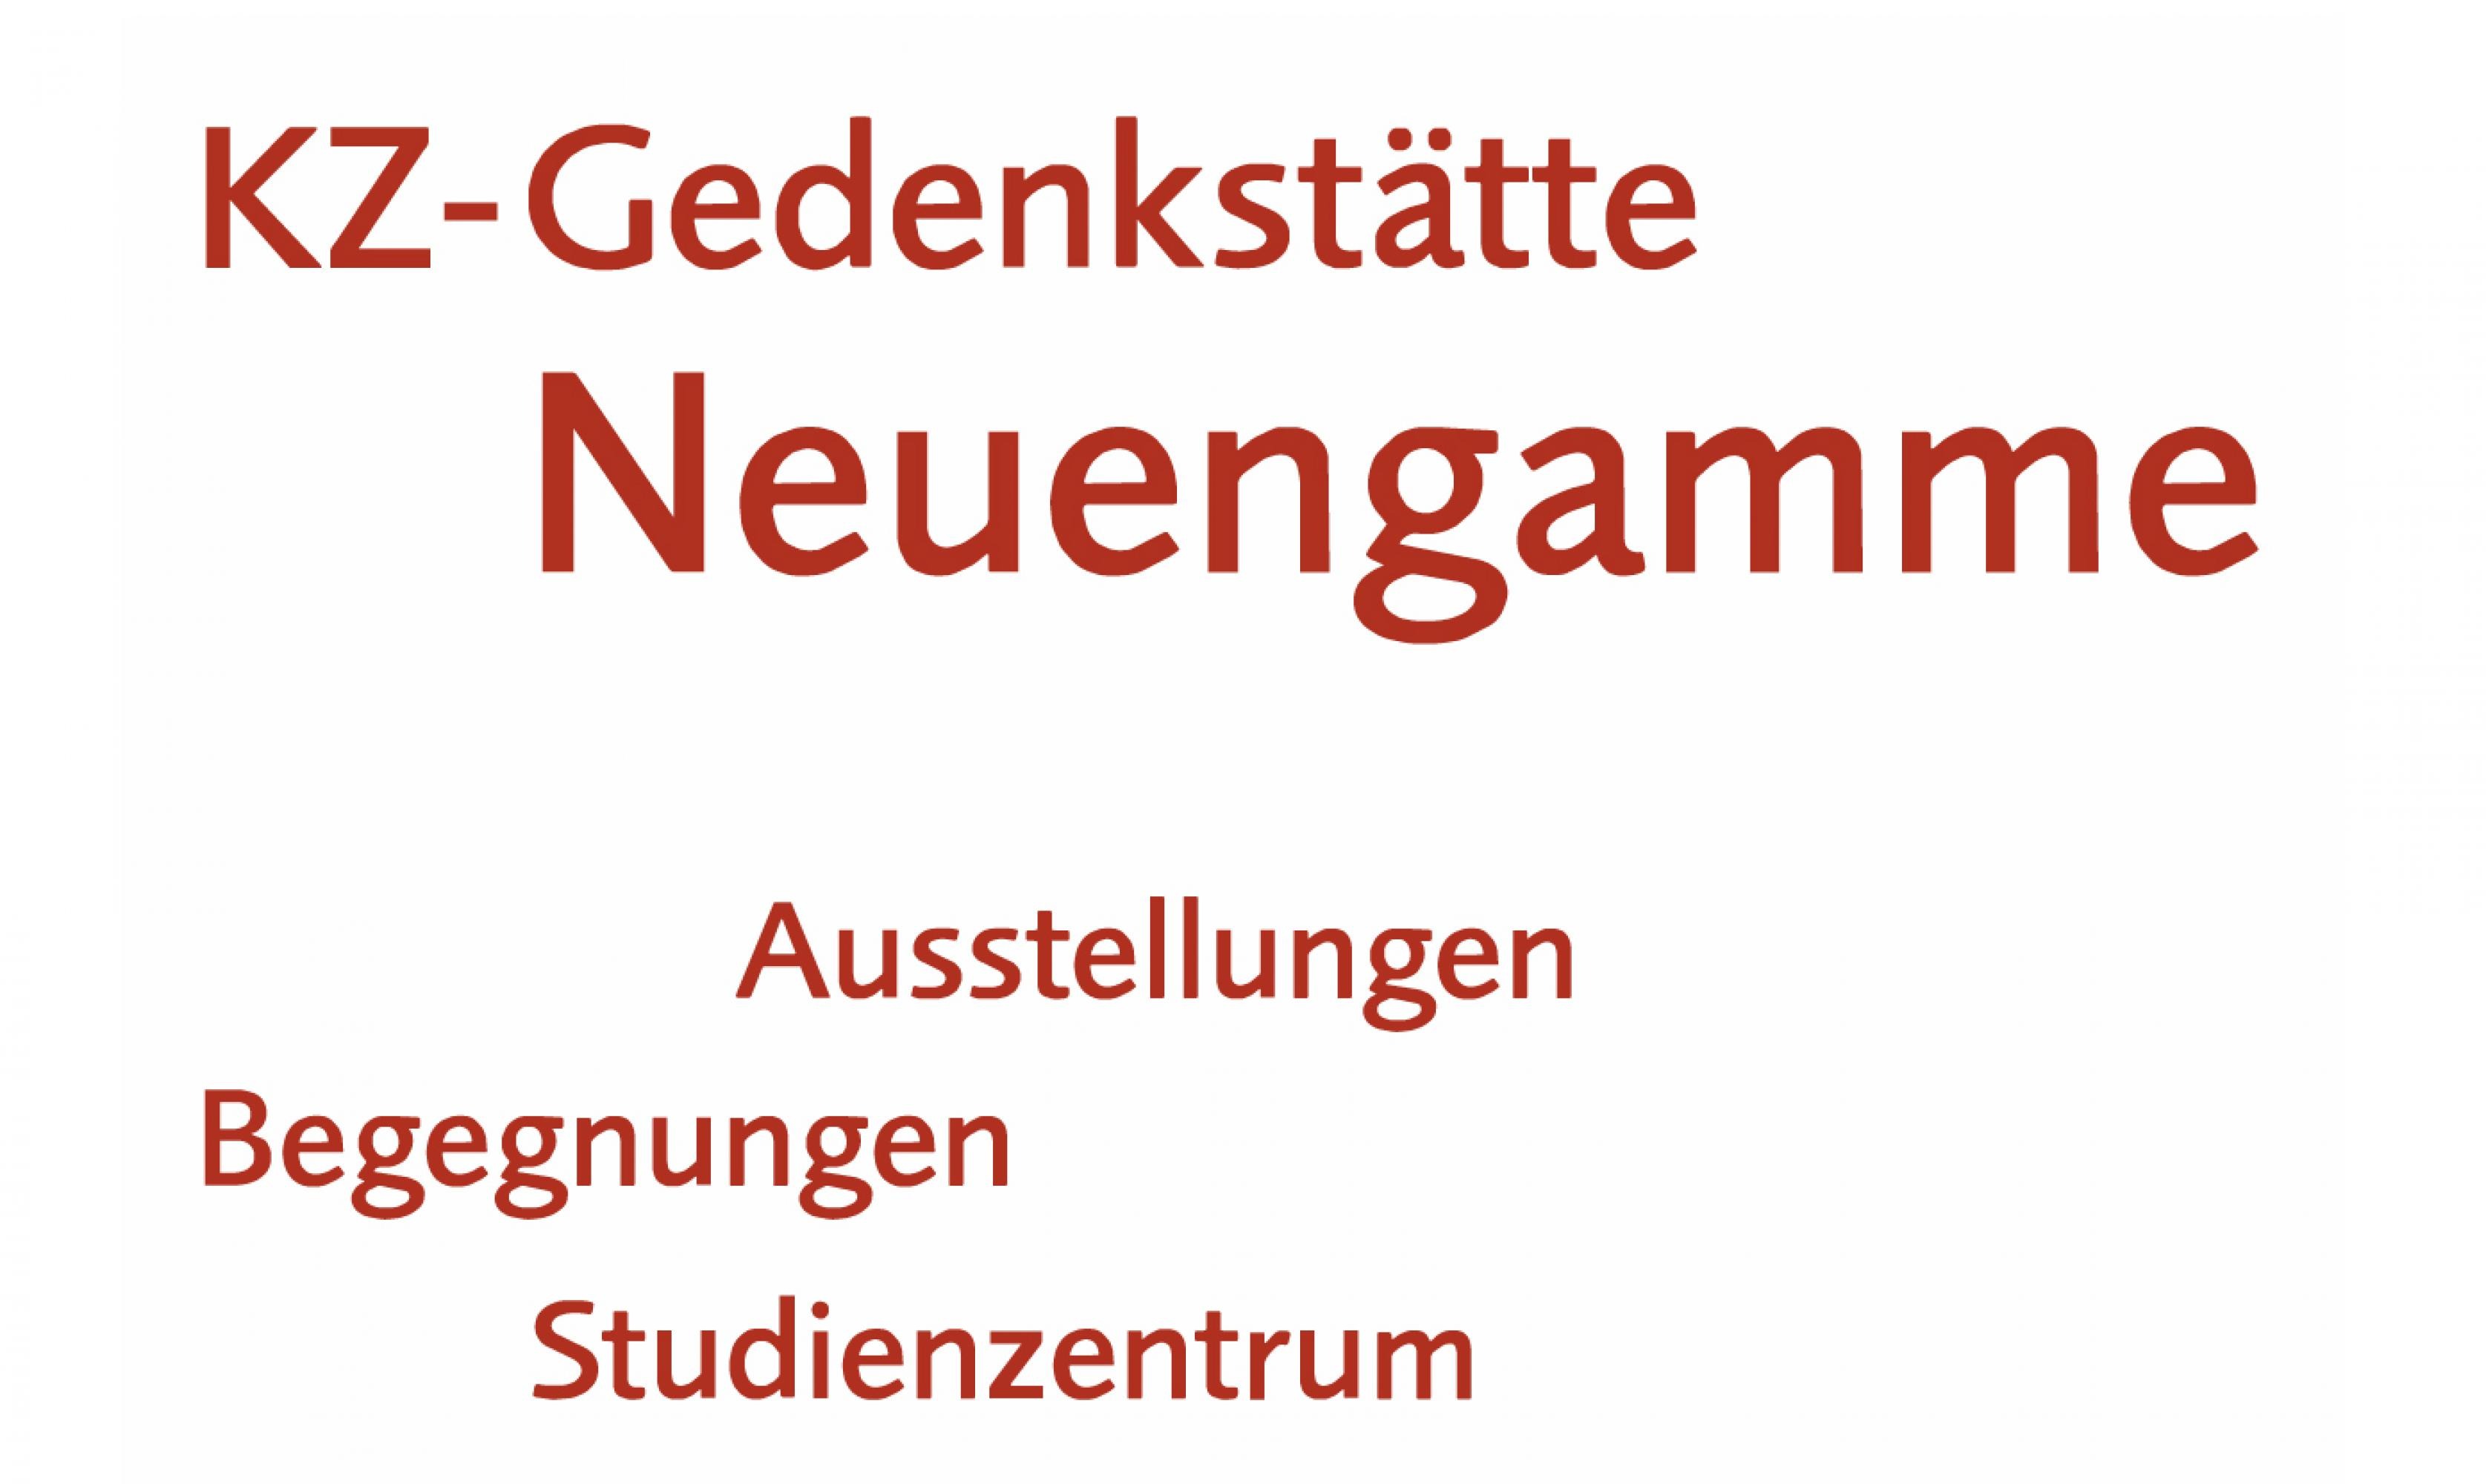 Das Logo der KZ-Gedenkstätte Neuengamme. Unter dem Logo steht Ausstellungen, Begegnungen und Studienzentrum